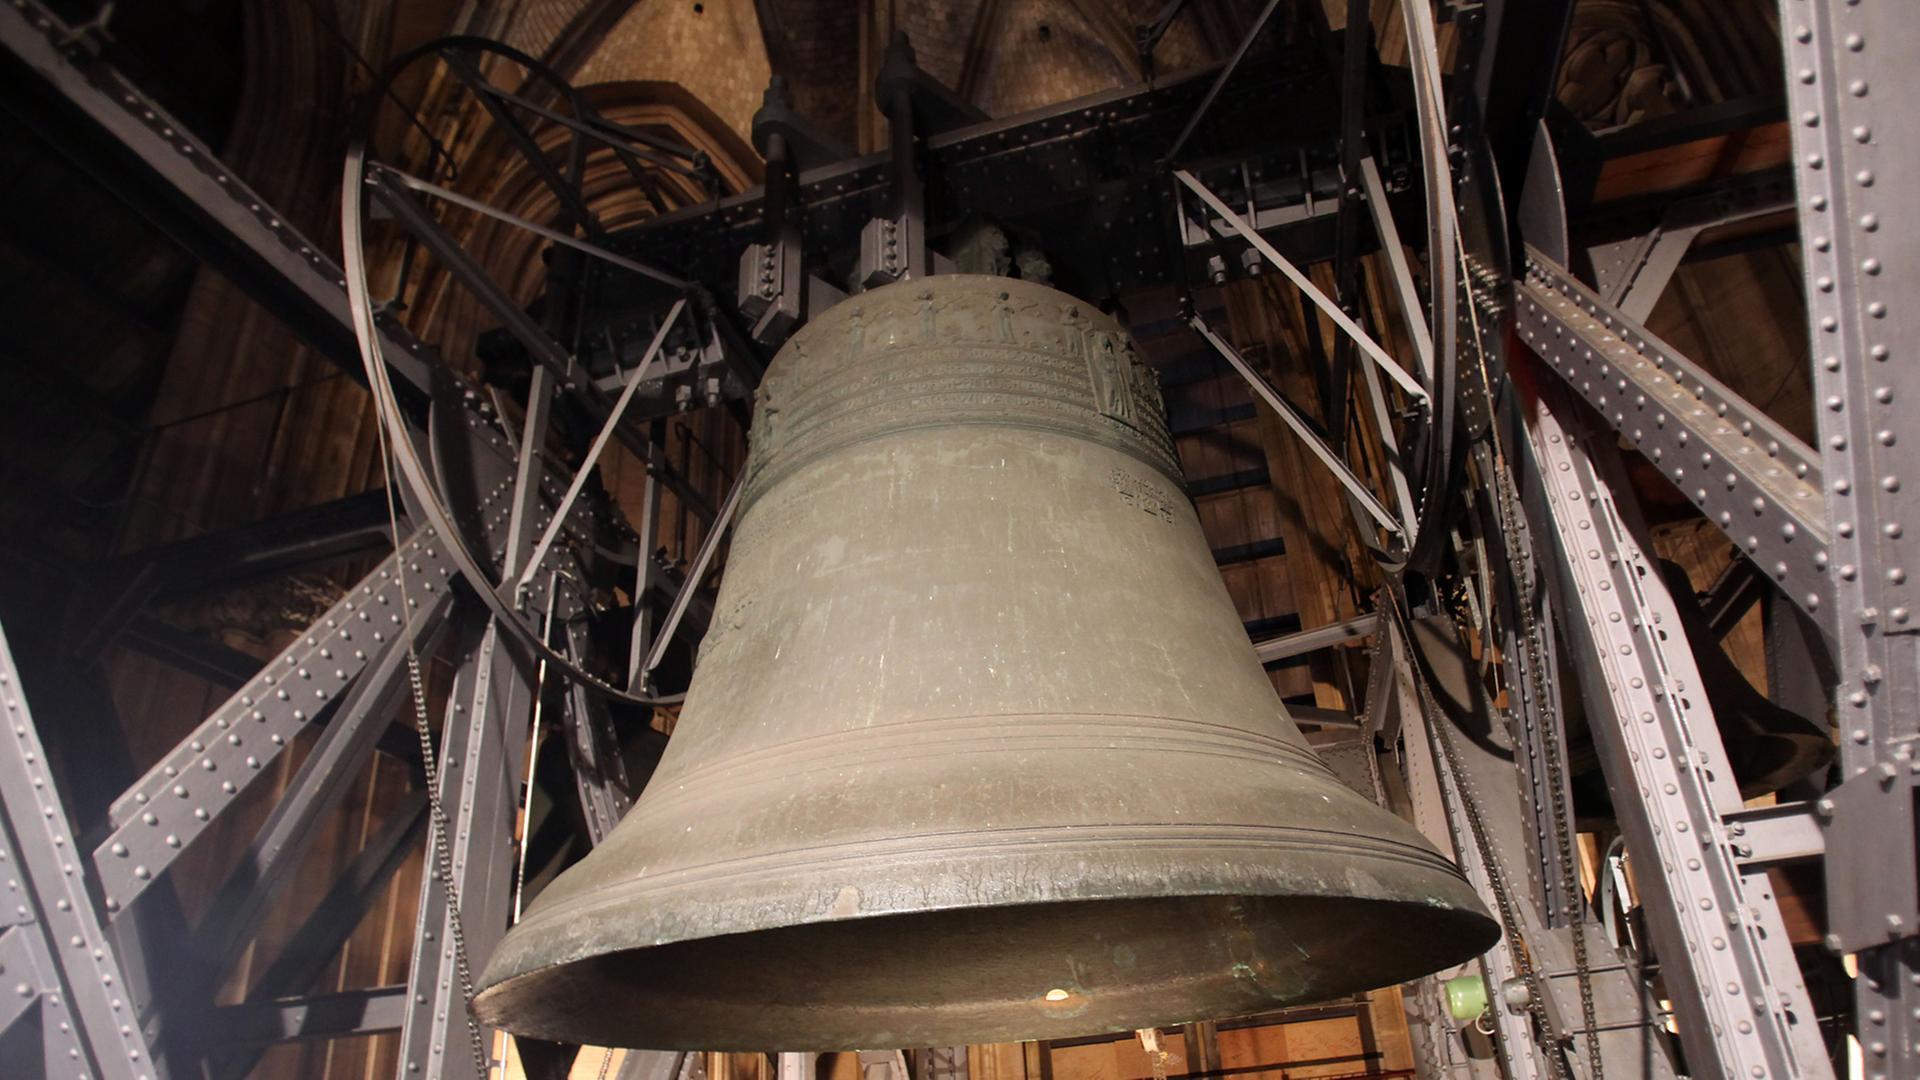 Der "Dicke Pitter", die größte Glocke des Kölner Doms, wird seit 1902 elektrisch geläutet - wenn nicht gerade der Klöppel zur Reparatur muss ...